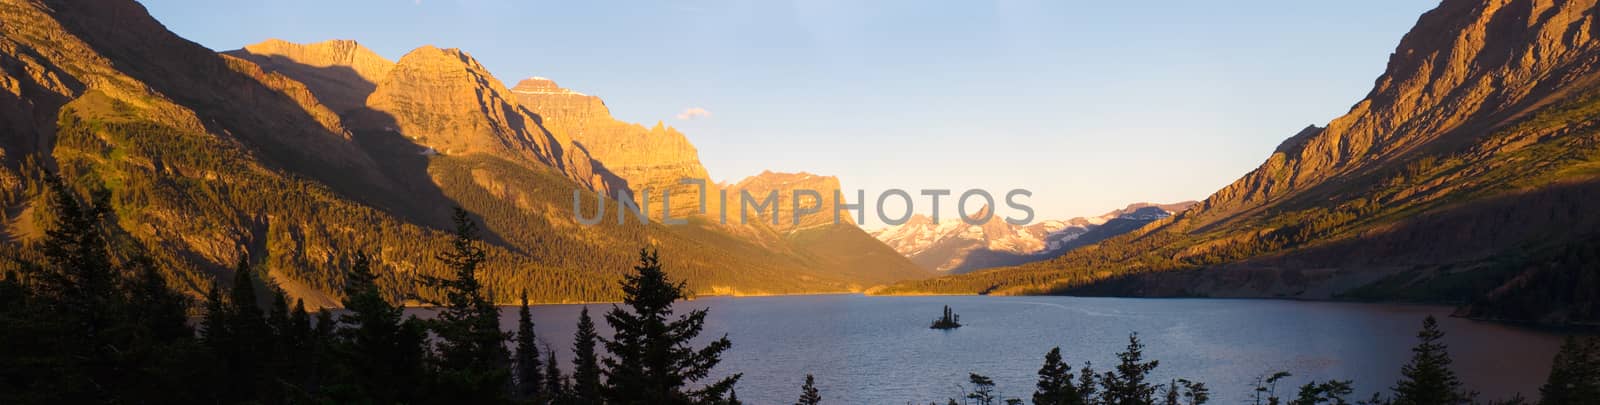 Lake in Glacier National Park - Montana, USA